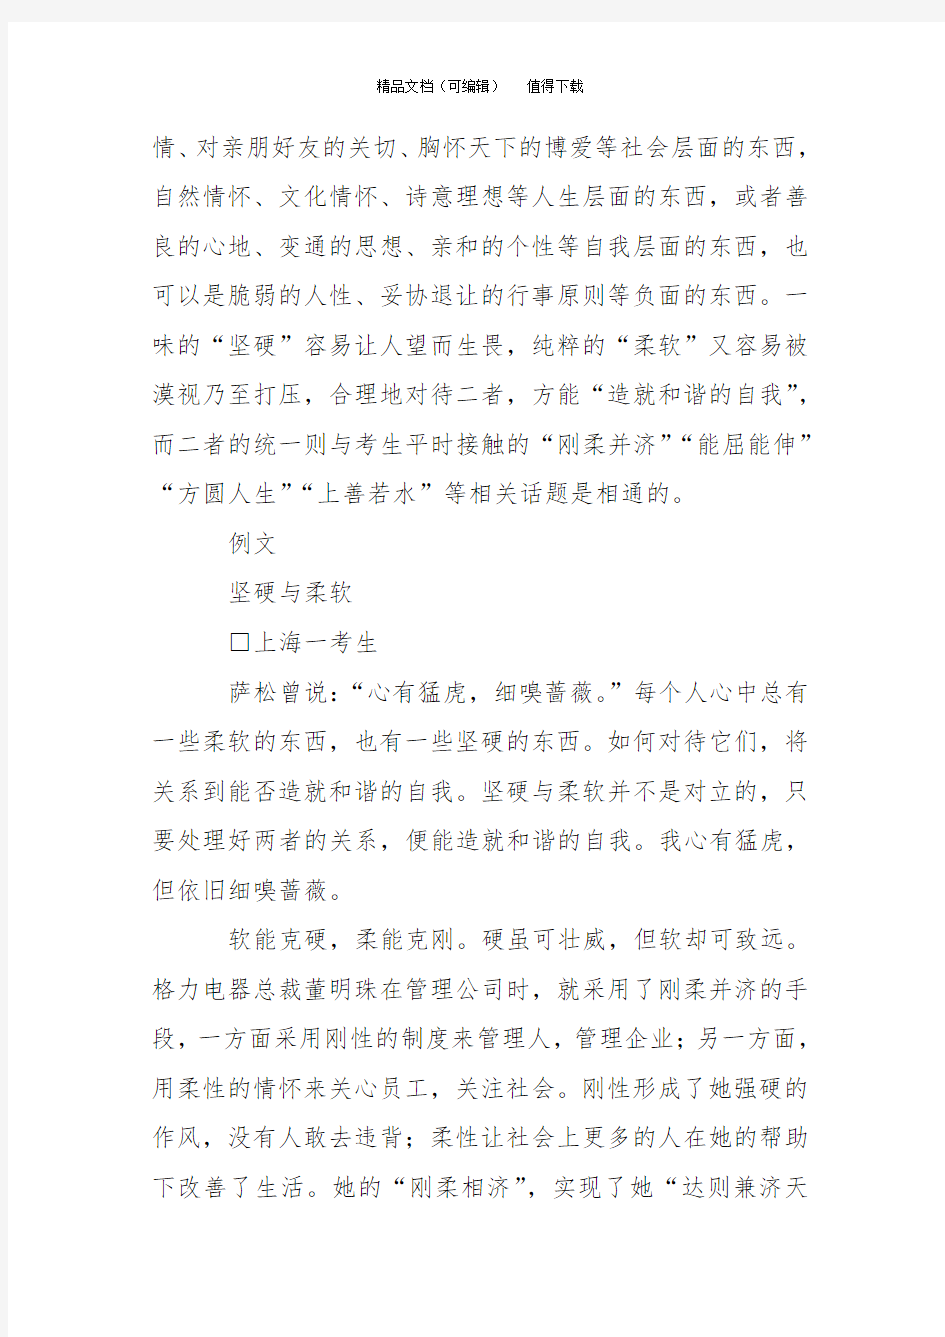 2015年高考作文阅卷手记之―上海卷